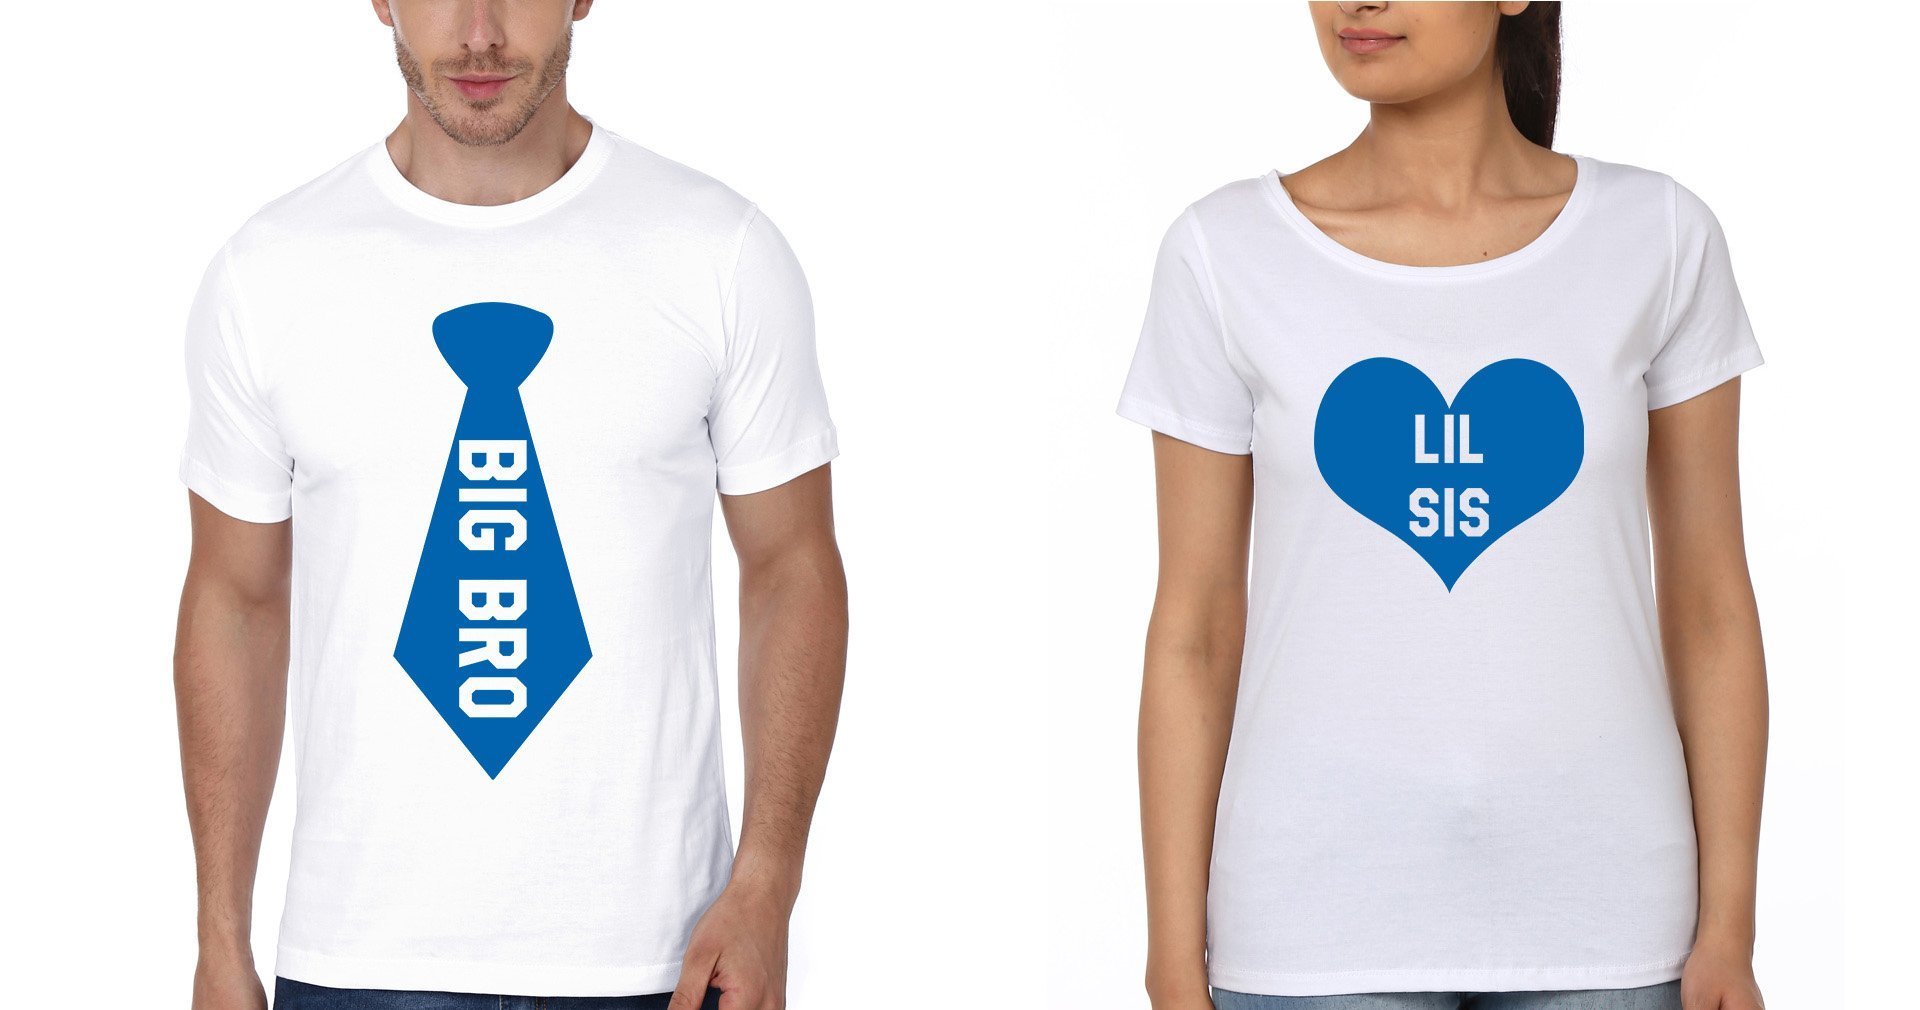 BIG BRO & LIL SIS Brother-Sister Half Sleeves T-Shirts -FunkyTees - Funky Tees Club